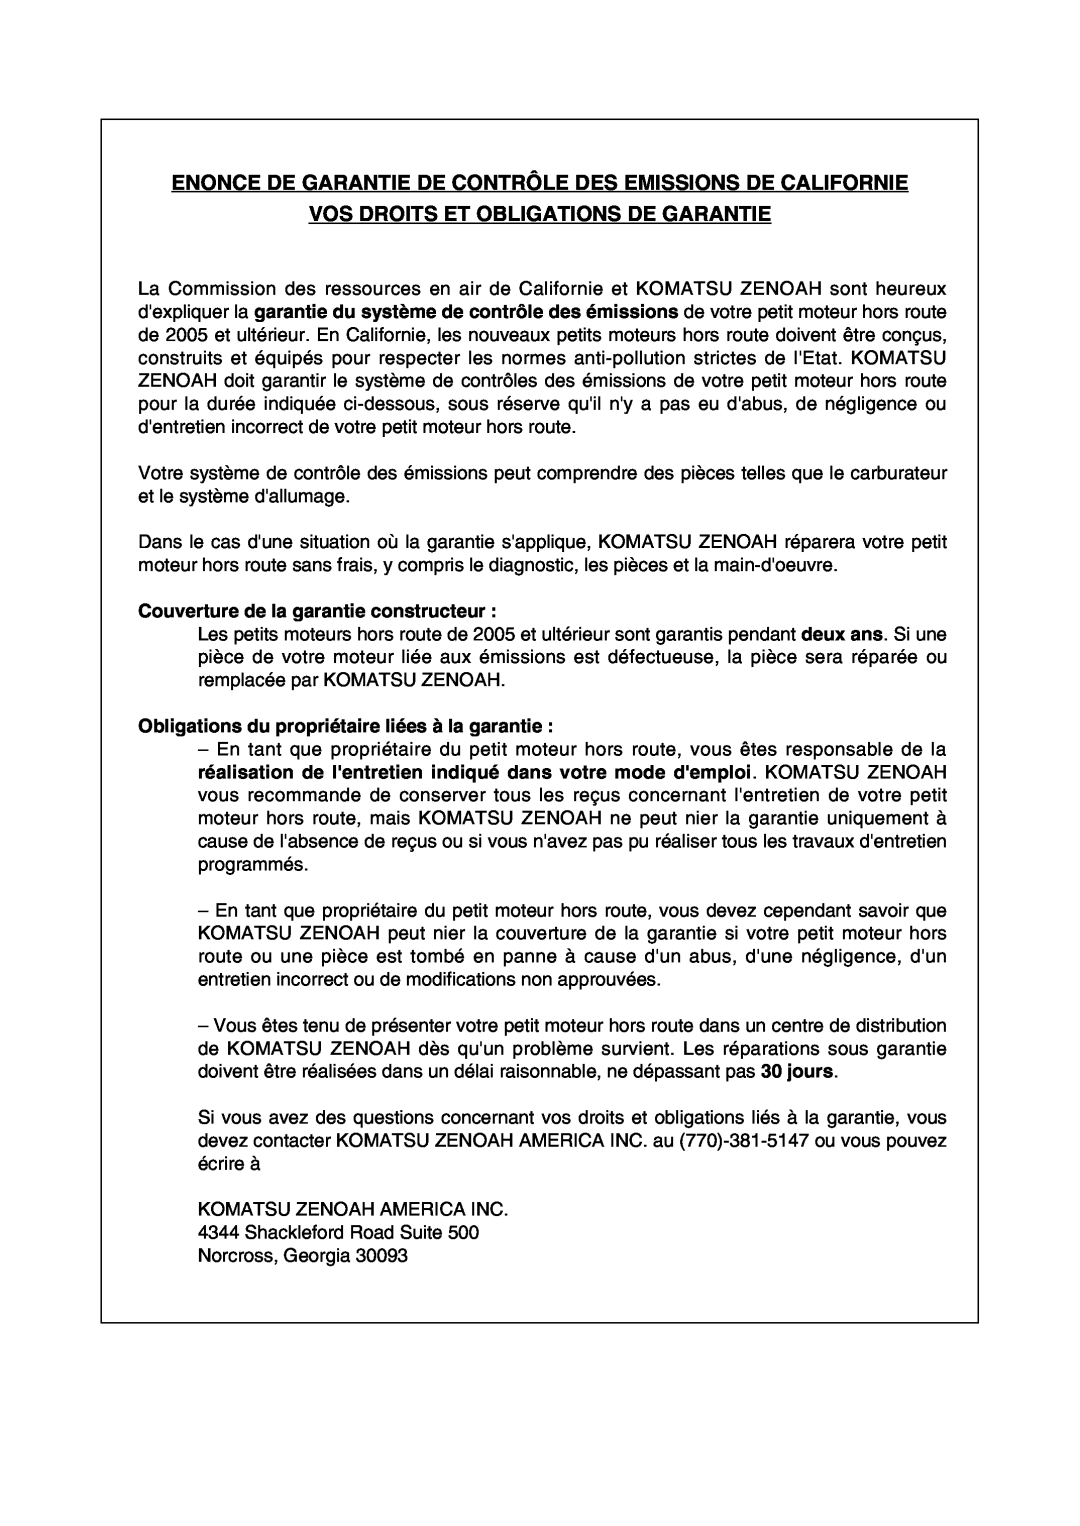 RedMax EBZ8001 manual Enonce De Garantie De Contrôle Des Emissions De Californie, Vos Droits Et Obligations De Garantie 